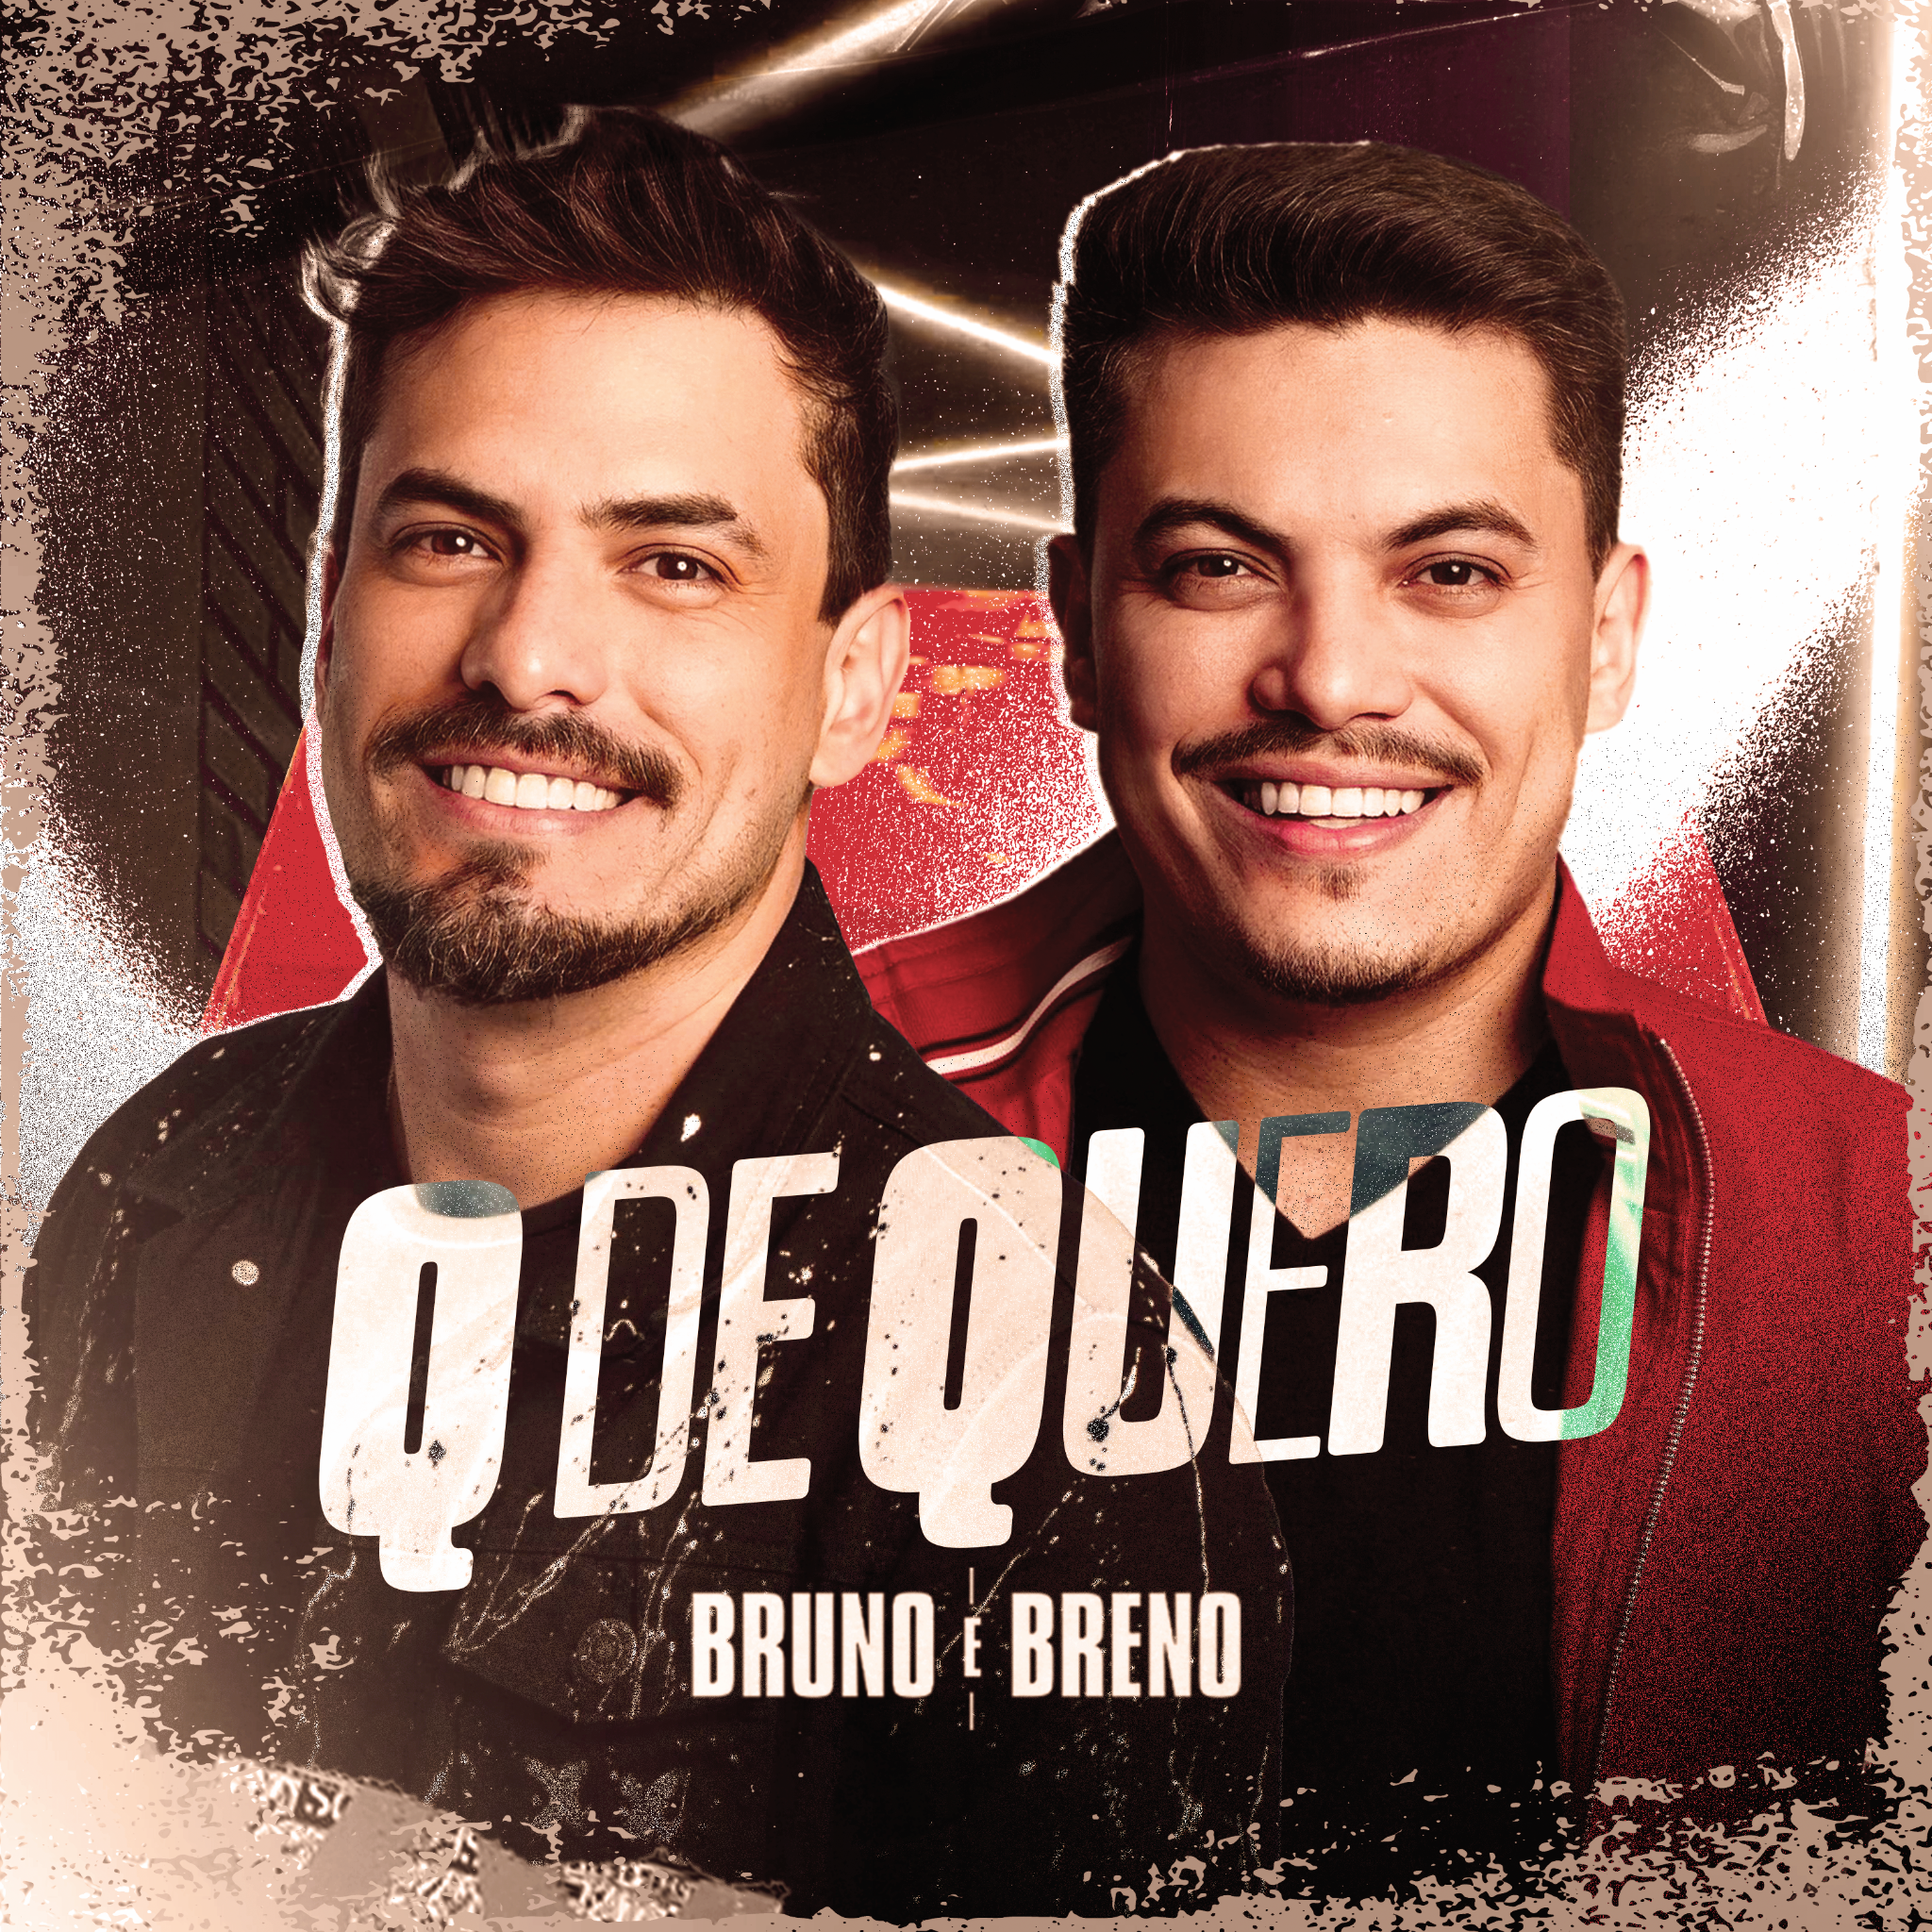 Bruno e Breno lançam single “Q de Quero” com batida animada e letra romântica